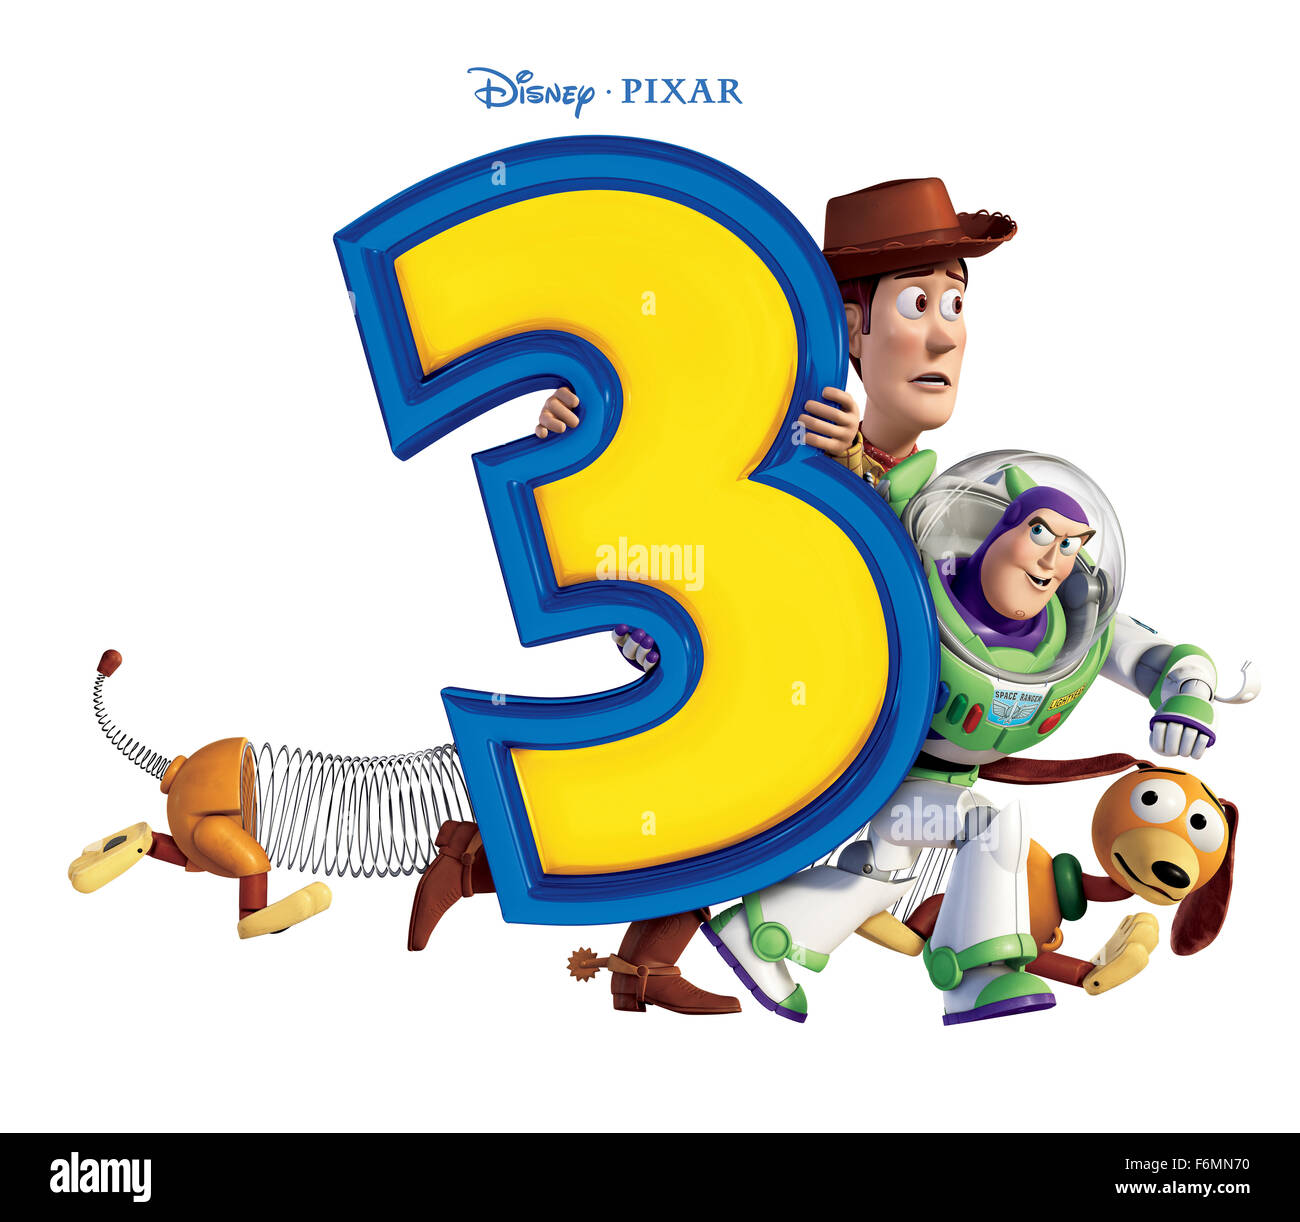 DATE DE SORTIE : Juin 18, 2010 TITRE DE FILM : Toy Story 3 Studio : Disney  Pixar Réalisateur : Lee Unkrich PLOT : Woody, Buzz et le reste de leurs amis